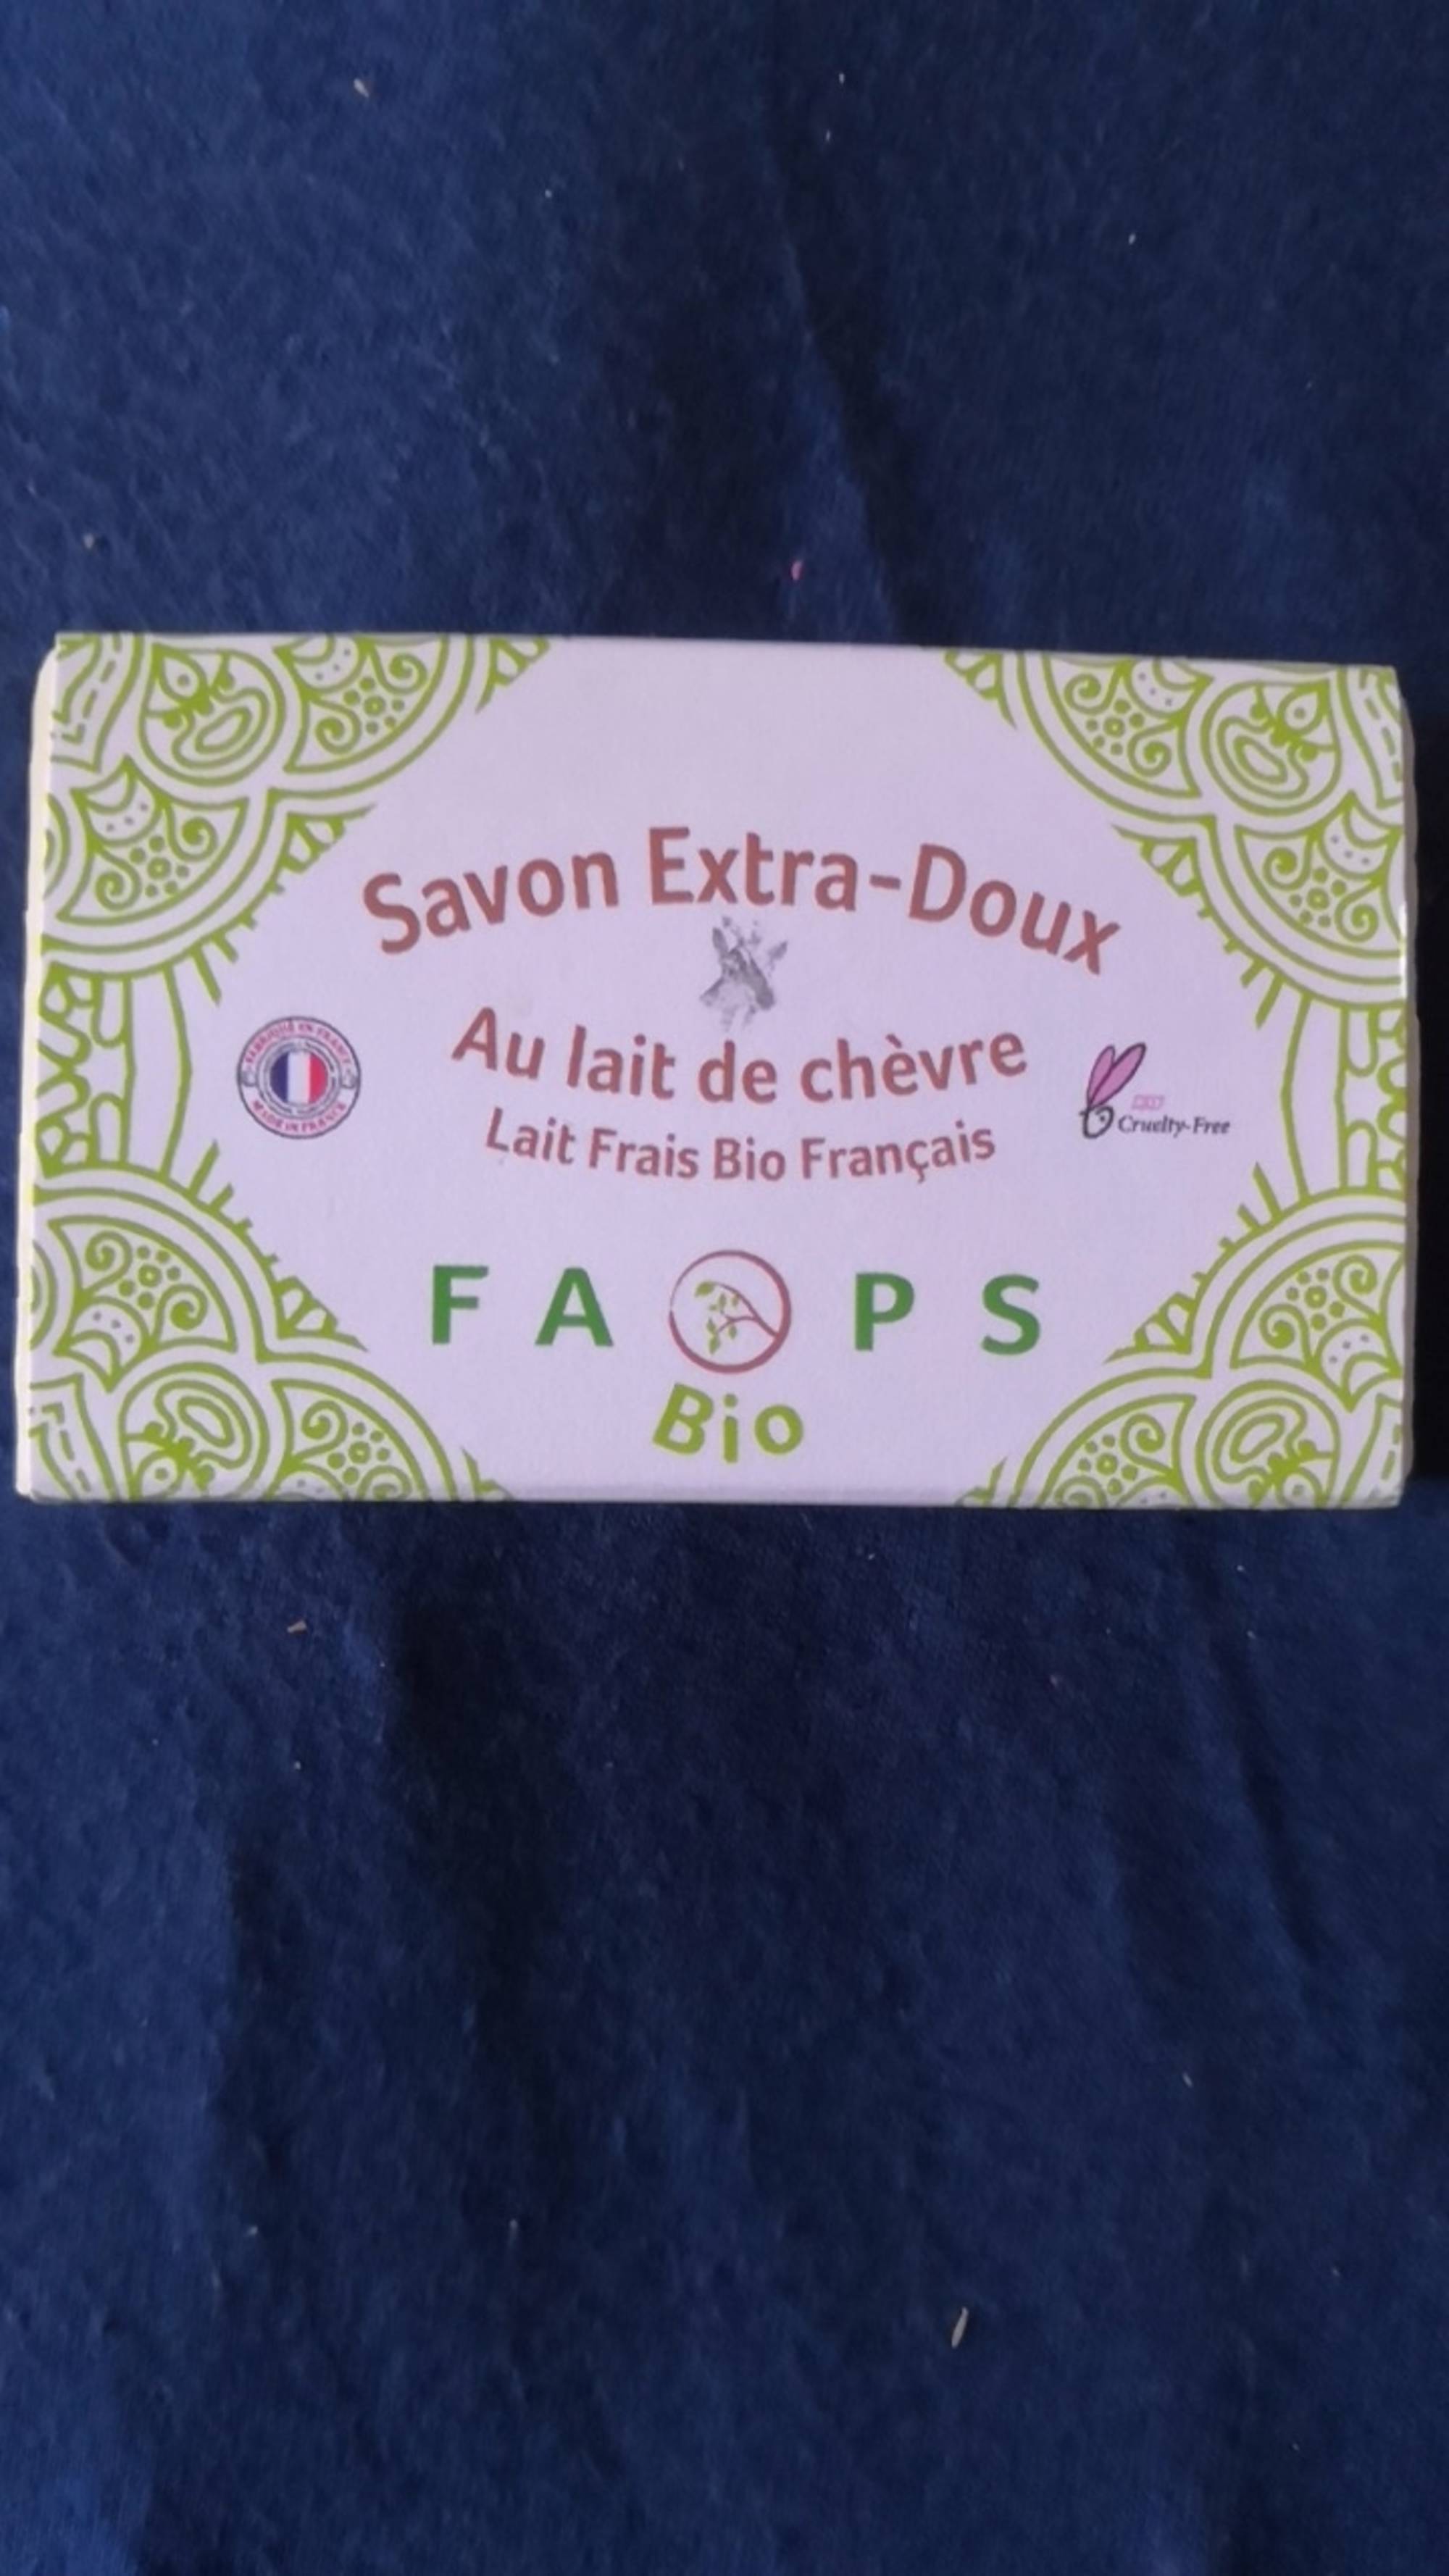 FAOPS - Savon extra-doux au lait de chèvre bio